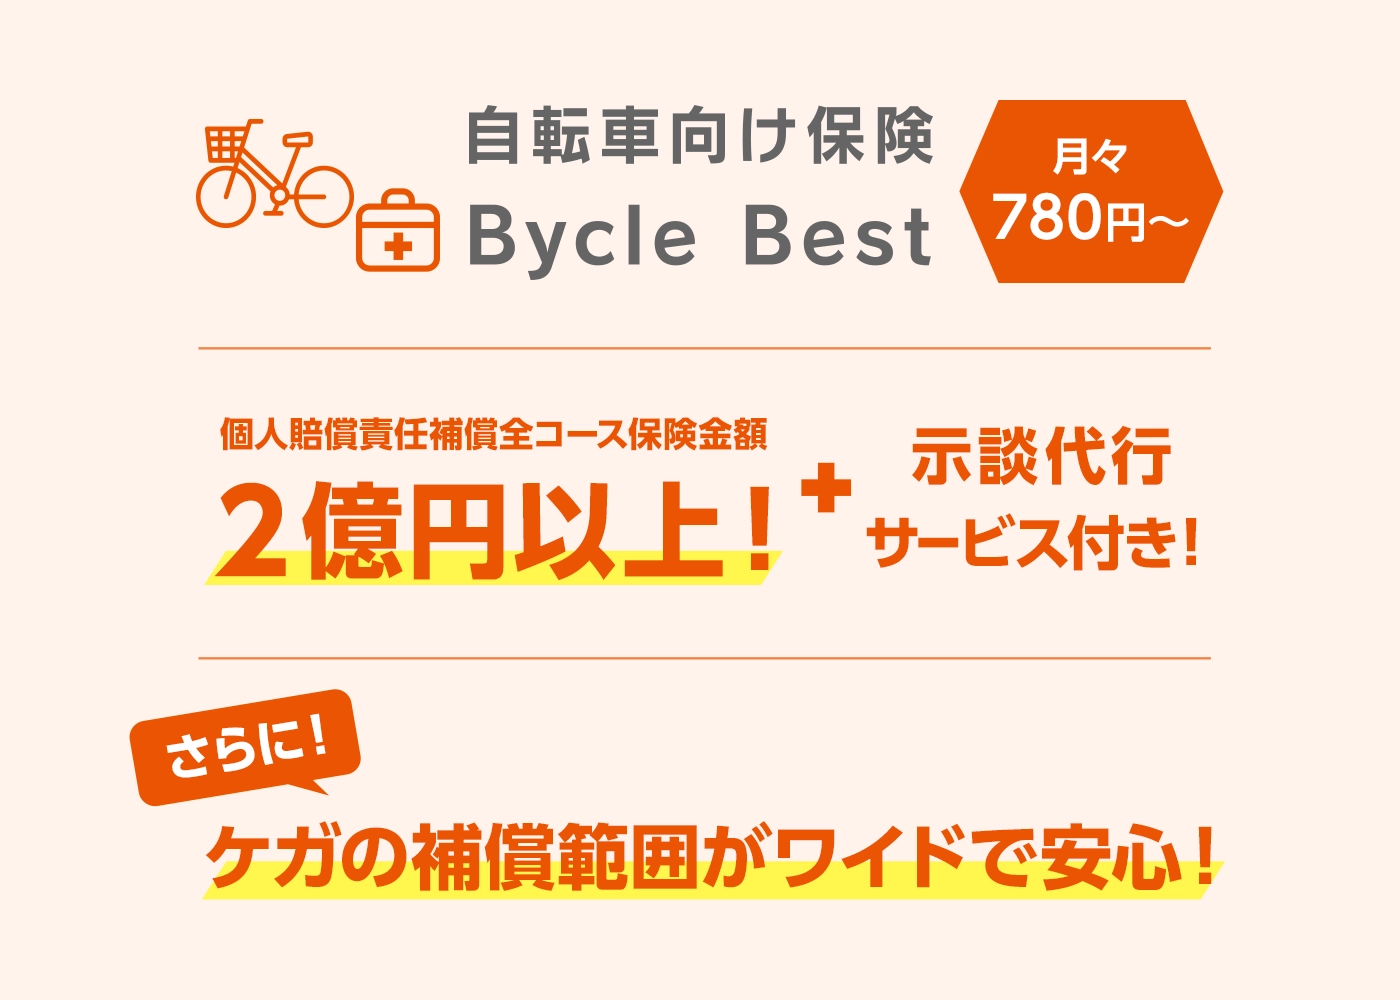 自転車向け保険 Bycle Best | auの金融・保険サービス | au